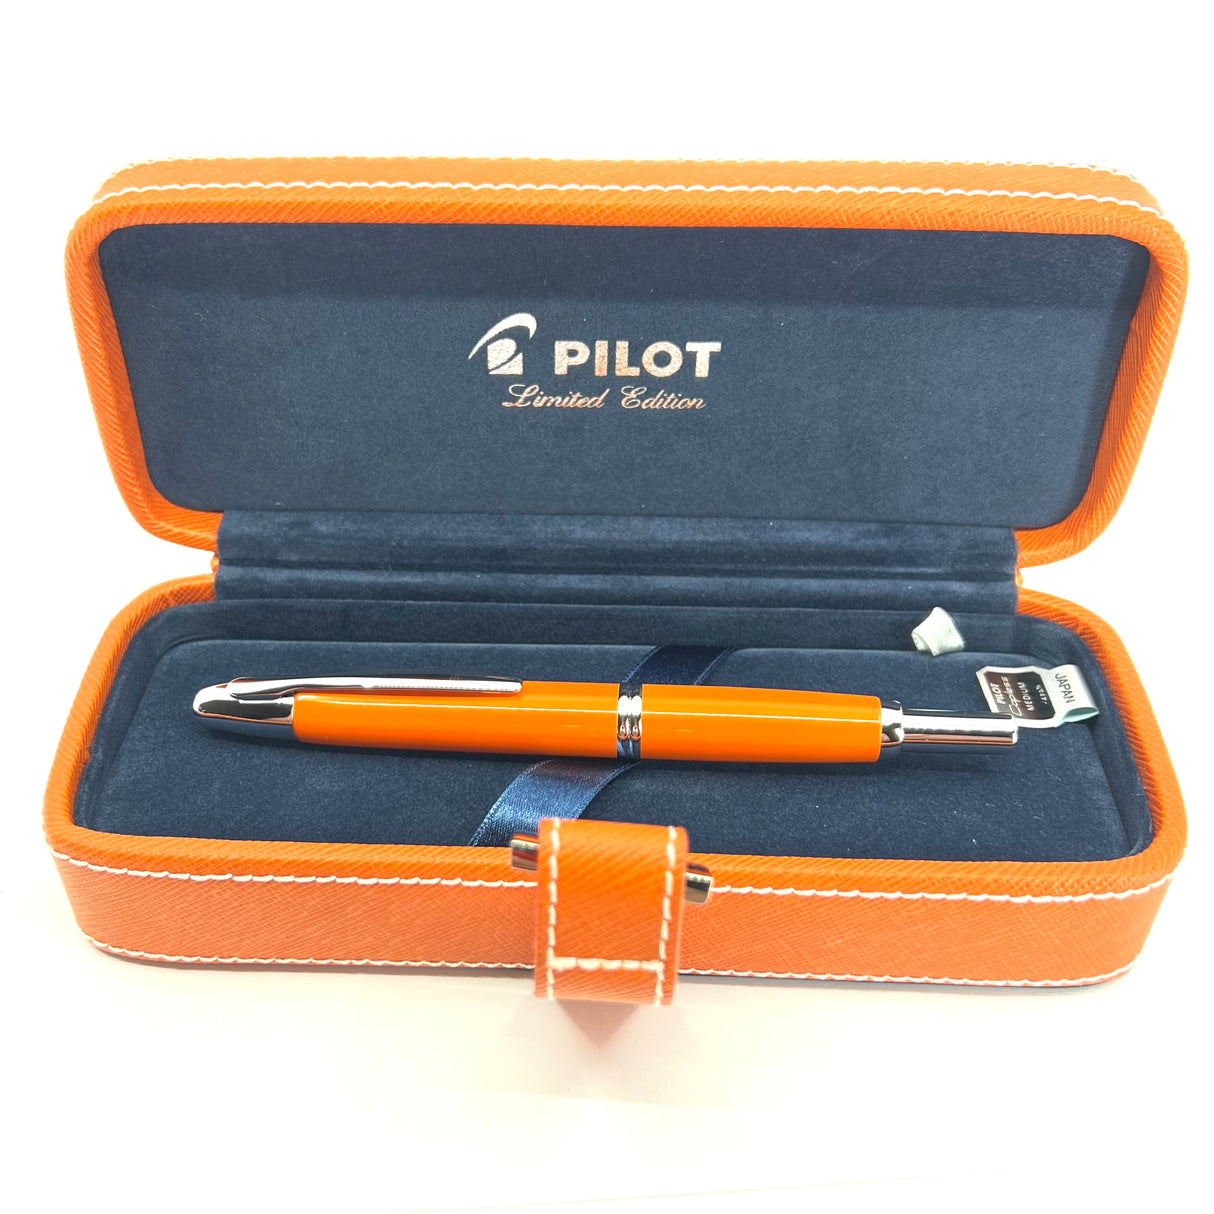 Pilot Vanishing Point 2007 Orange Limited Edition